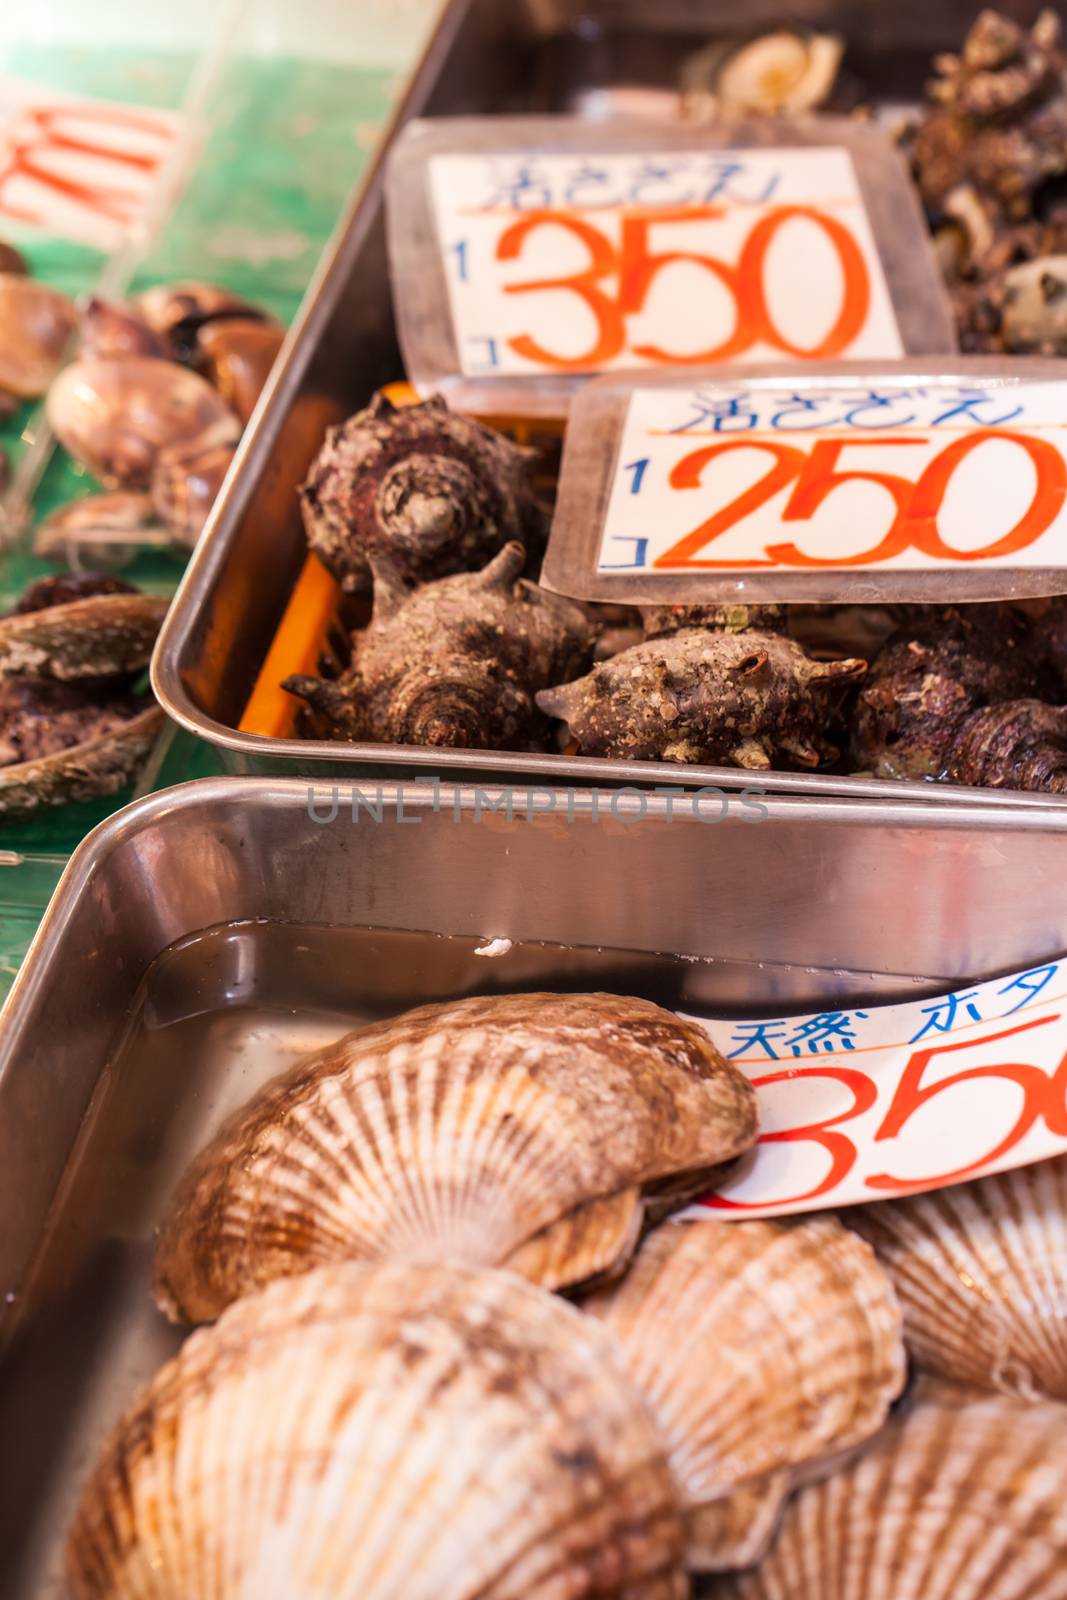  Tsukiji Fish Market, Japan. by mariusz_prusaczyk